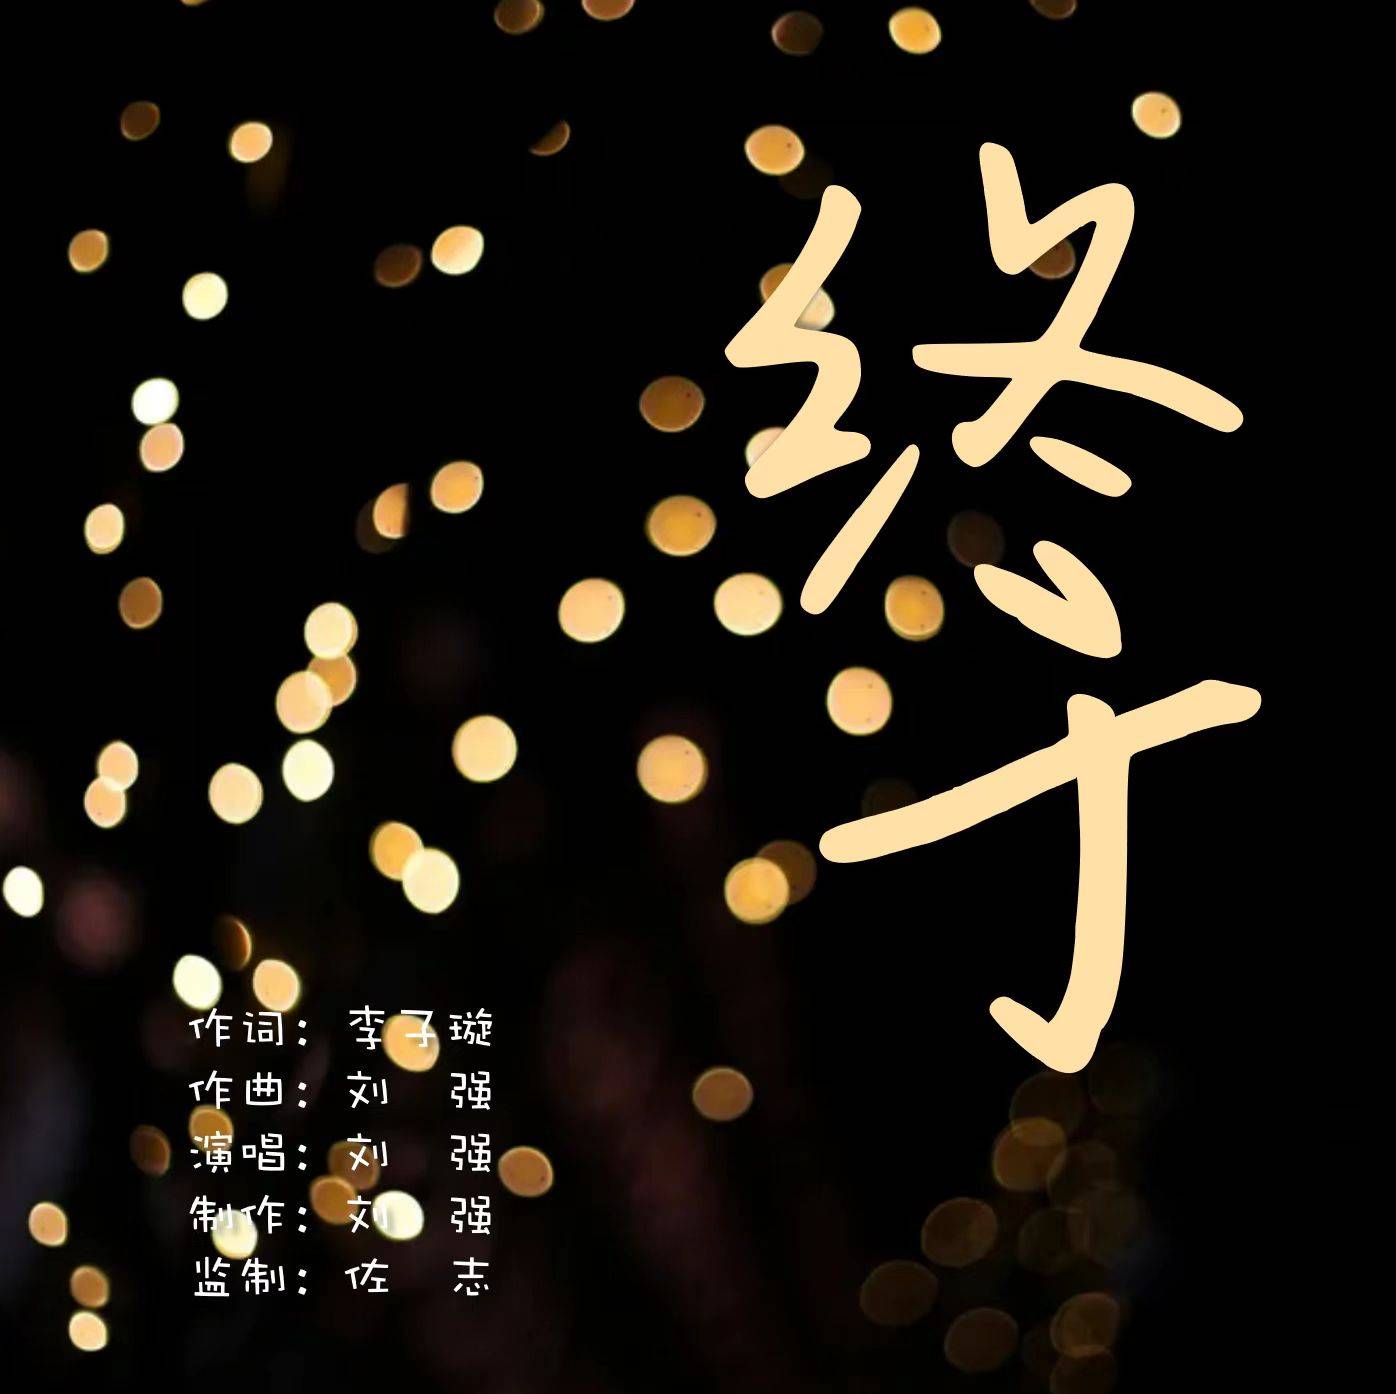 刘强演唱的原创歌曲《终于》正式发行上线 